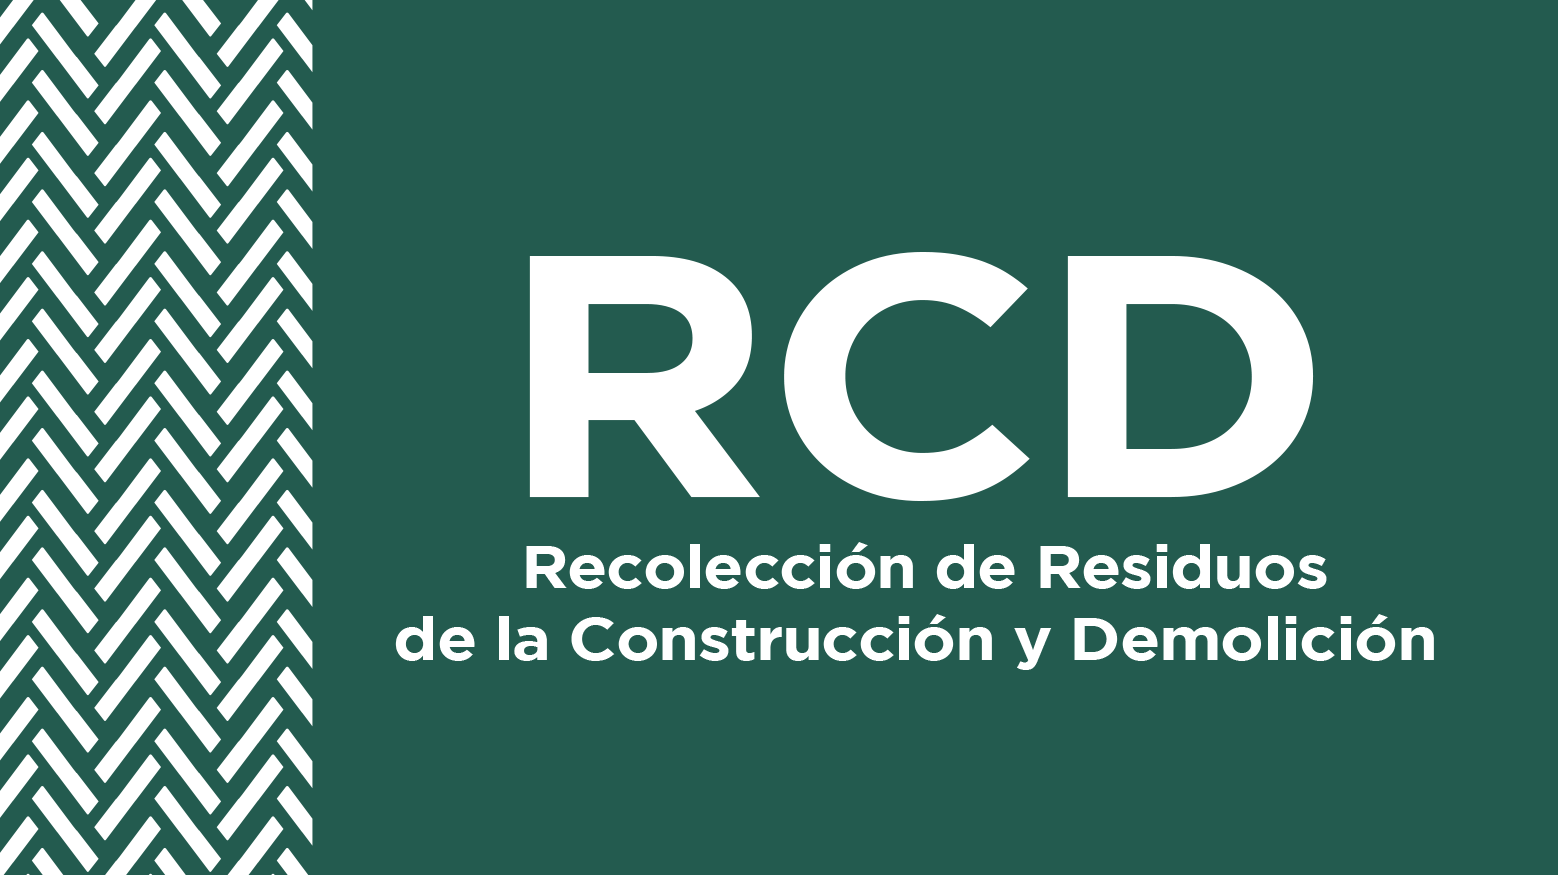 Programa para la Recolección de Residuos de la Construcción y Demolición (RCD) Domiciliarios